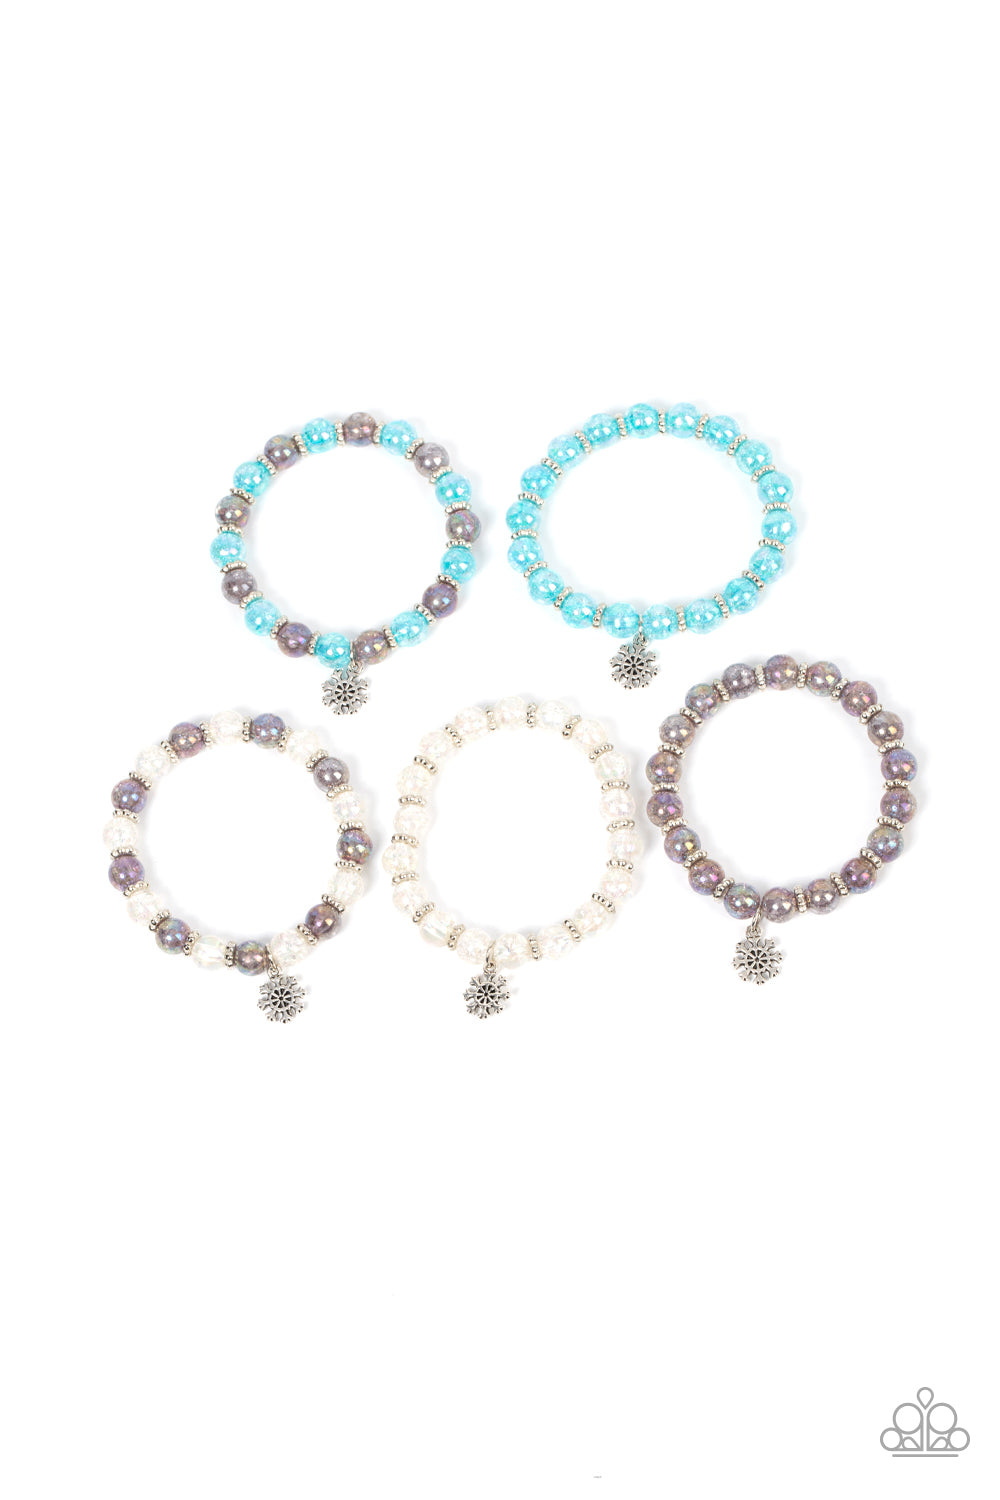 Starlet Shimmer Snowflakes  Bracelet Kit - The V Resale Boutique